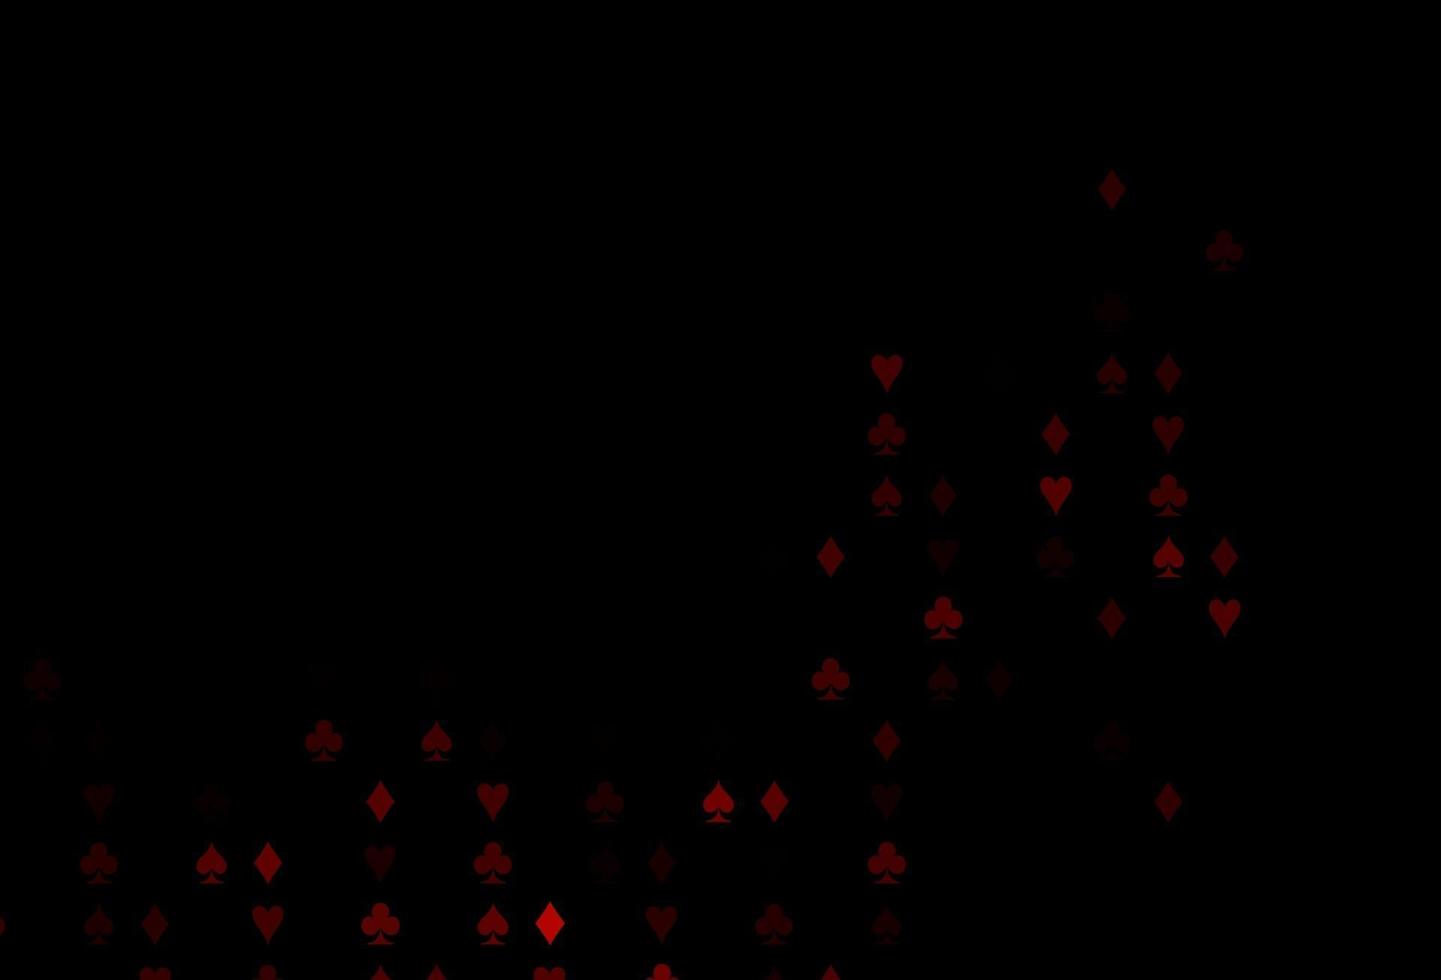 modello vettoriale rosso scuro con il simbolo delle carte.